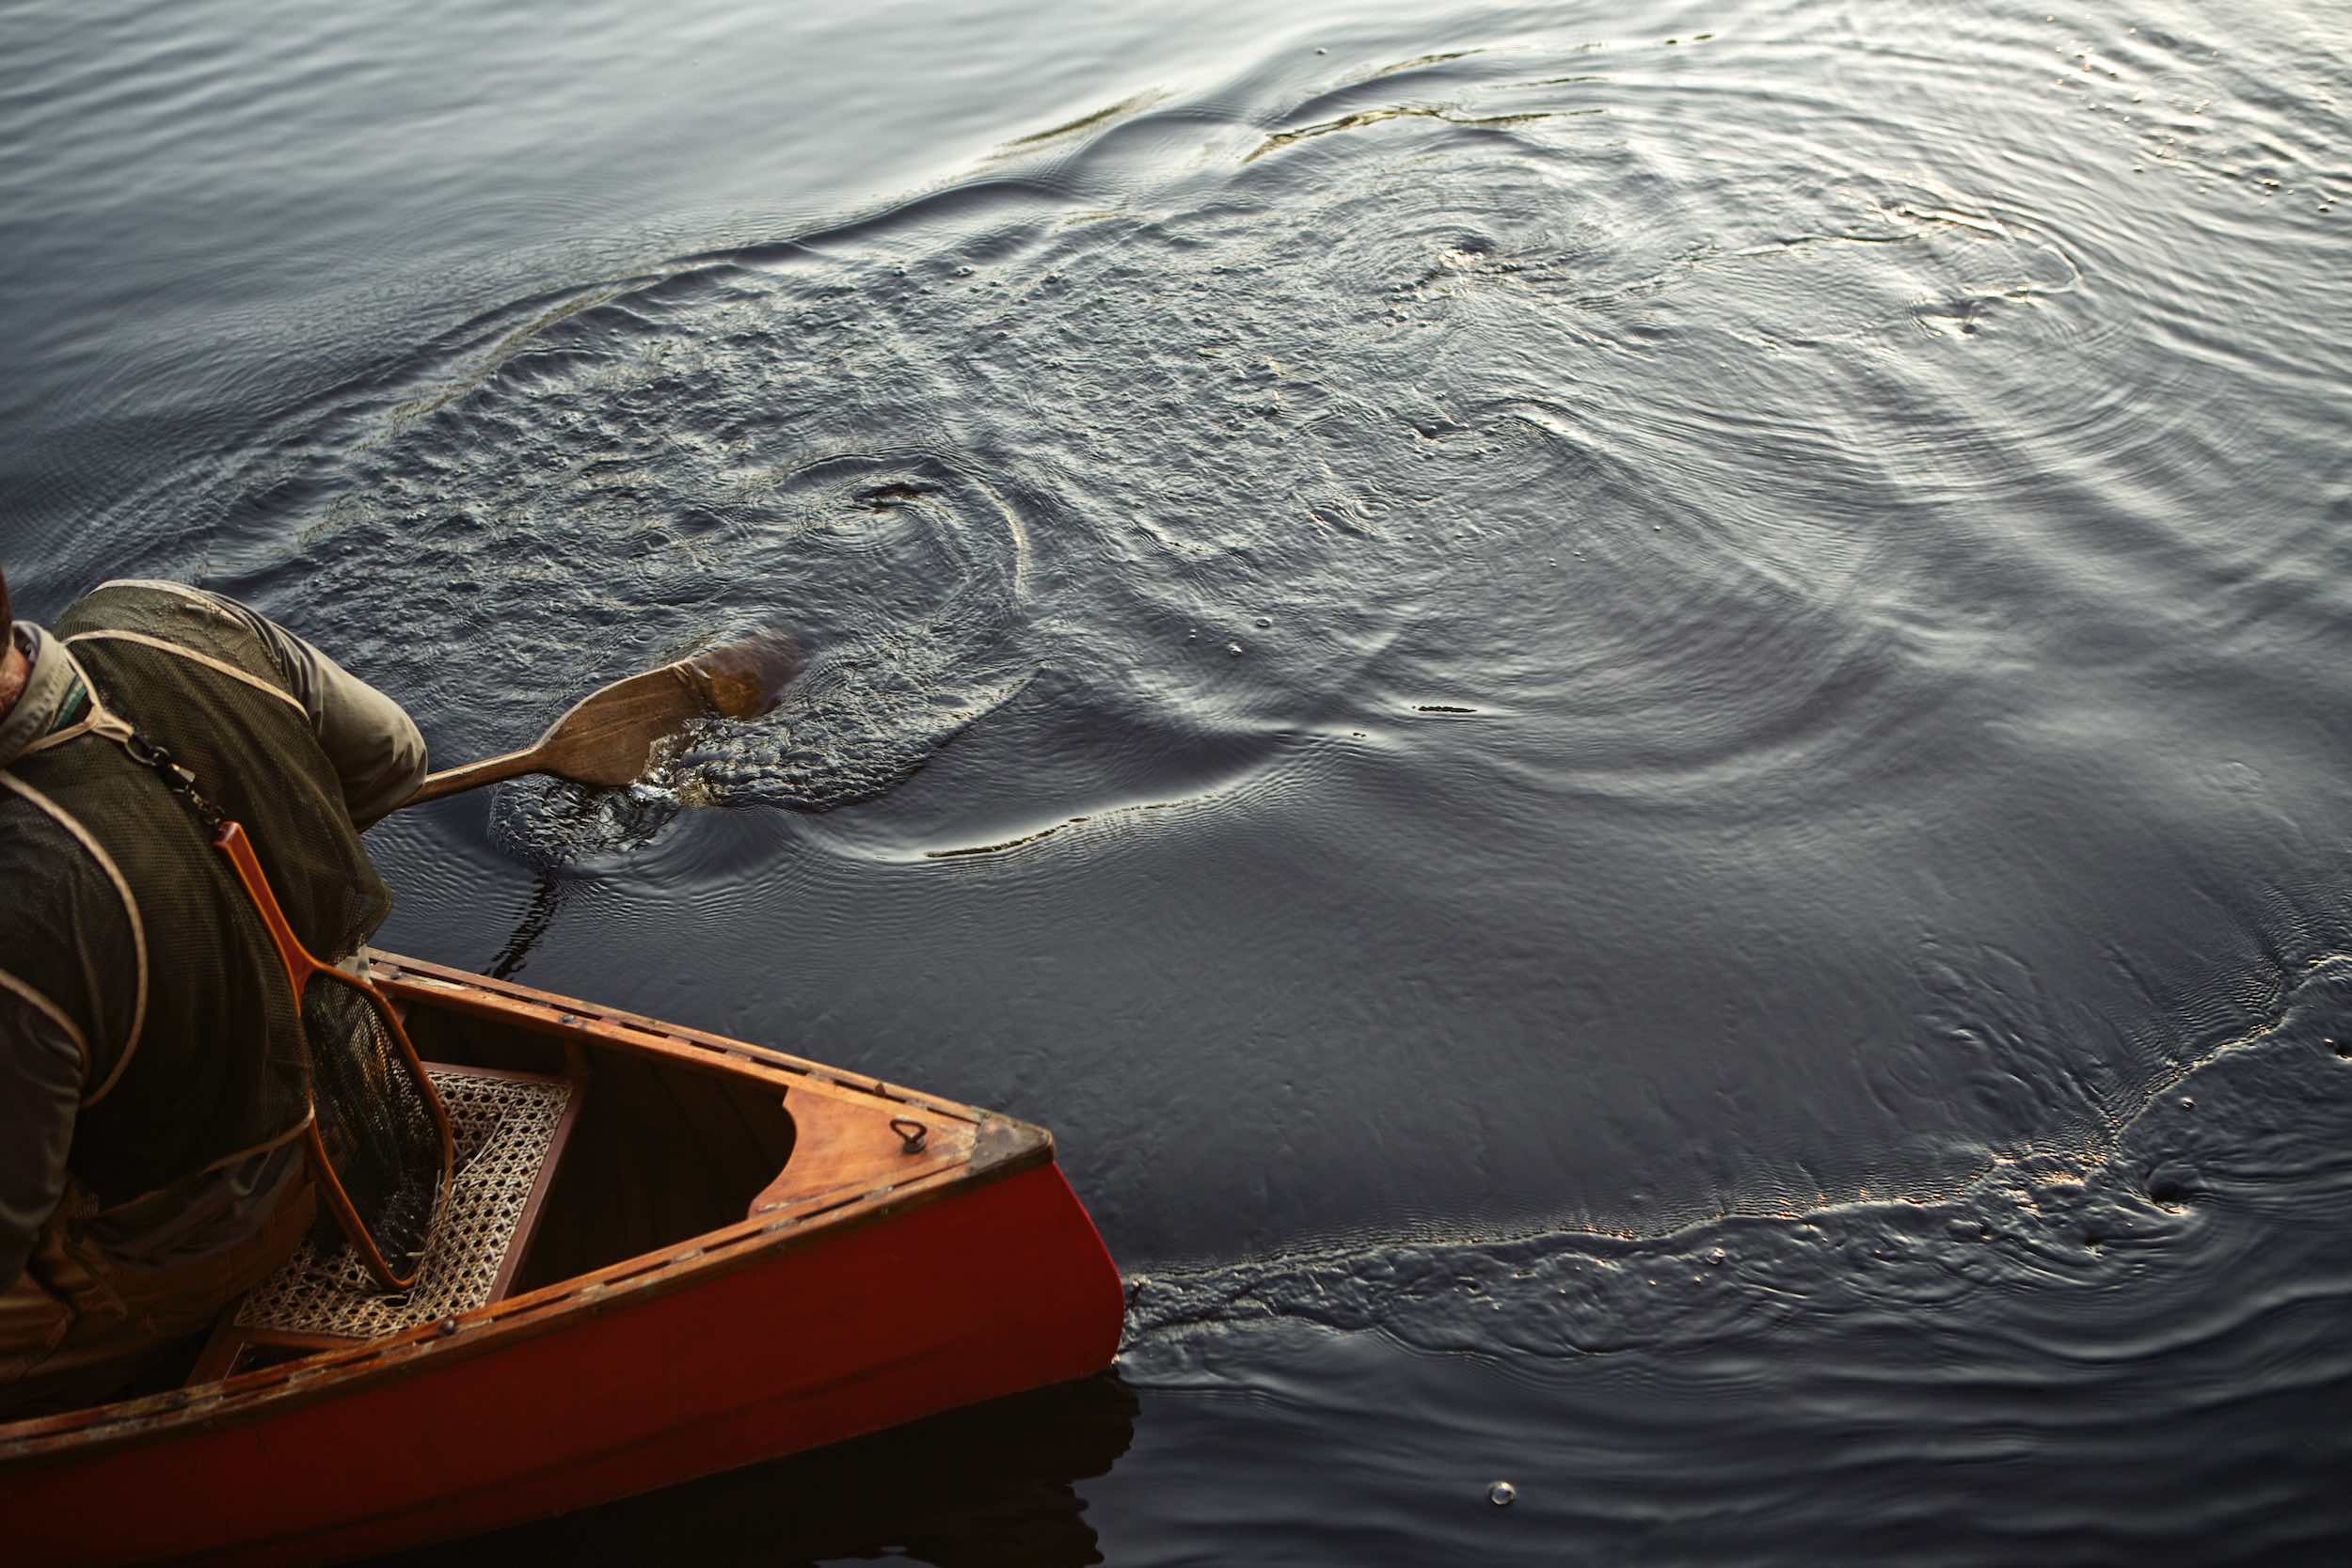 Jody Horton Photography - Tail end of canoe in dark water, shot for Jack Daniels Single Barrel.